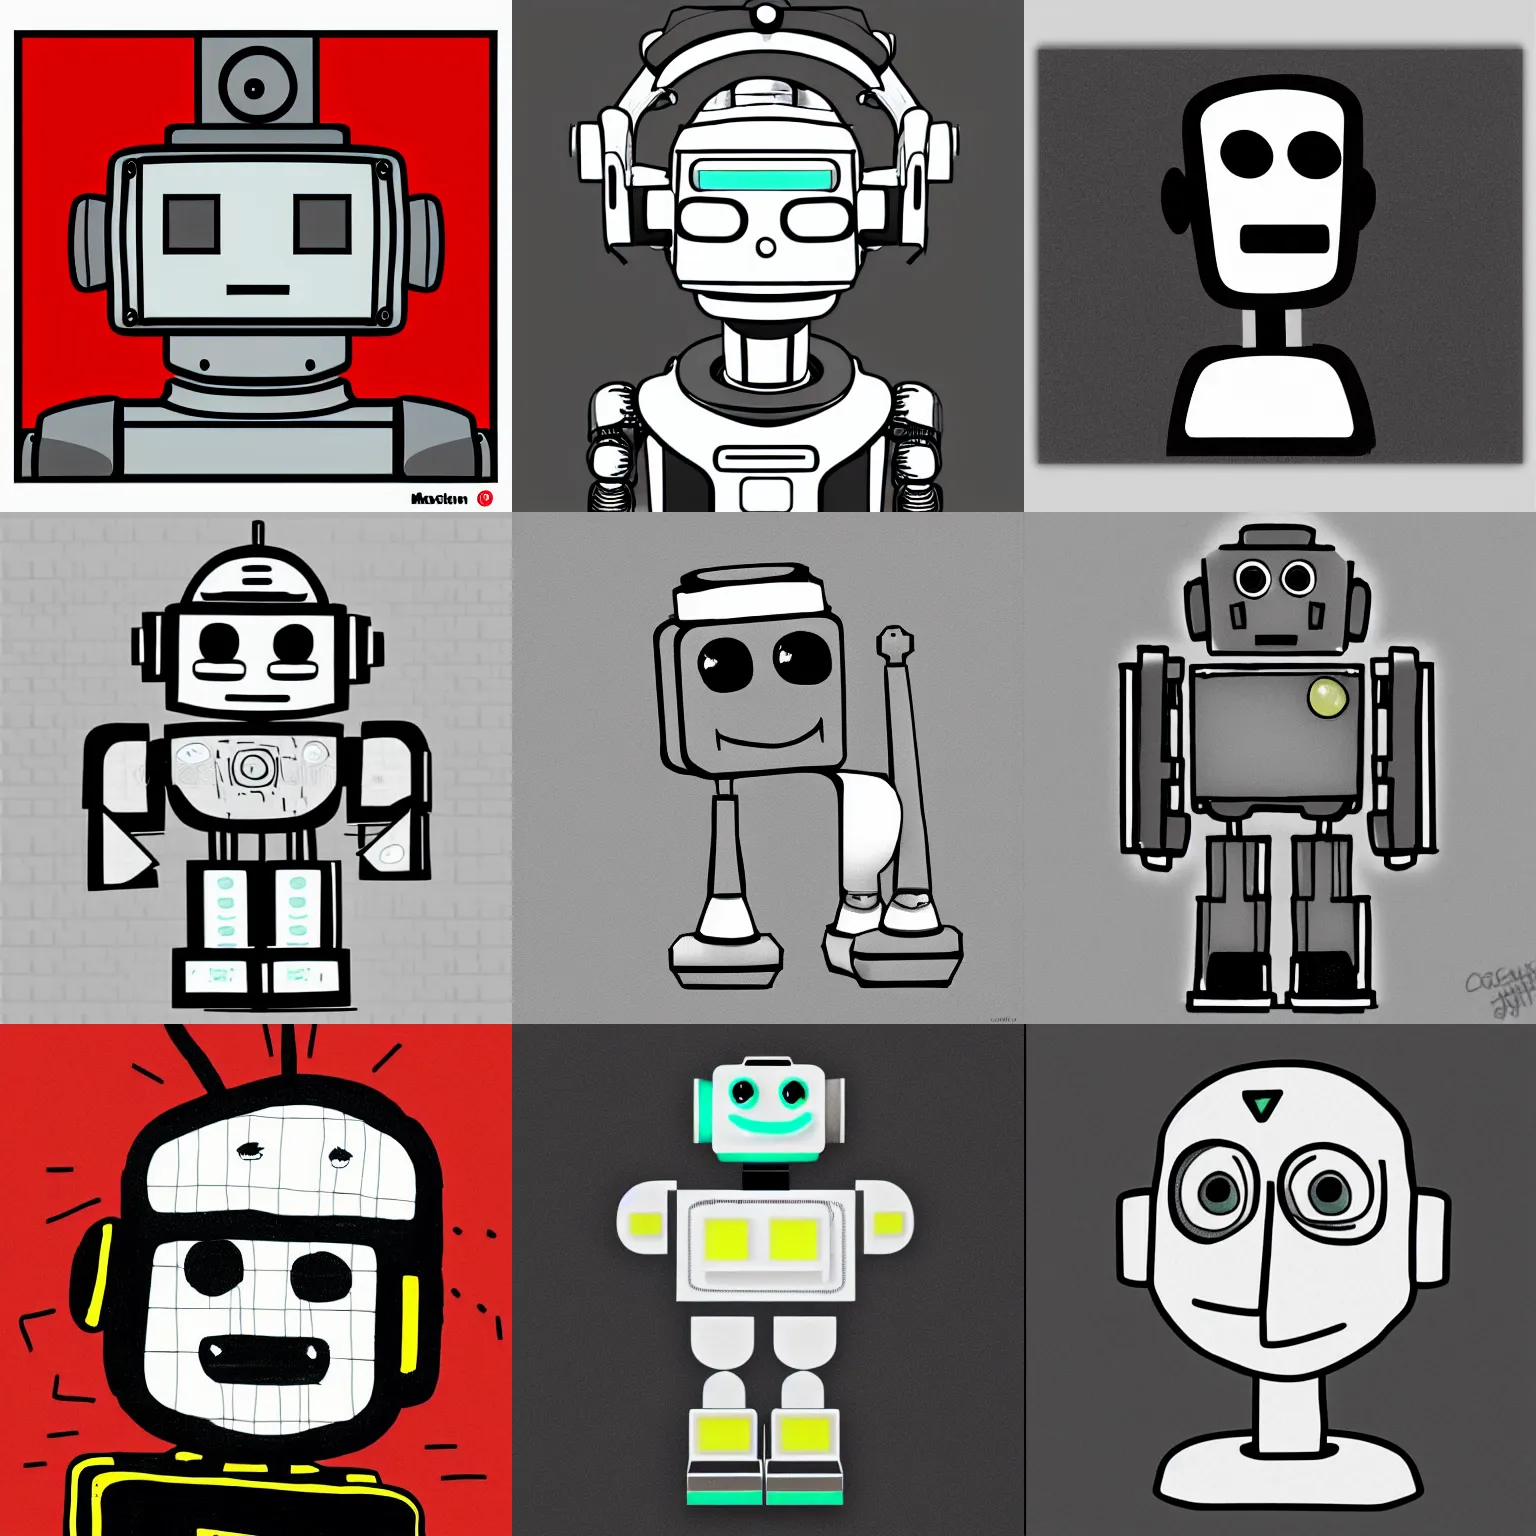 Prompt: Marvin the depressed robot, profile picture, illustration, blockwork art